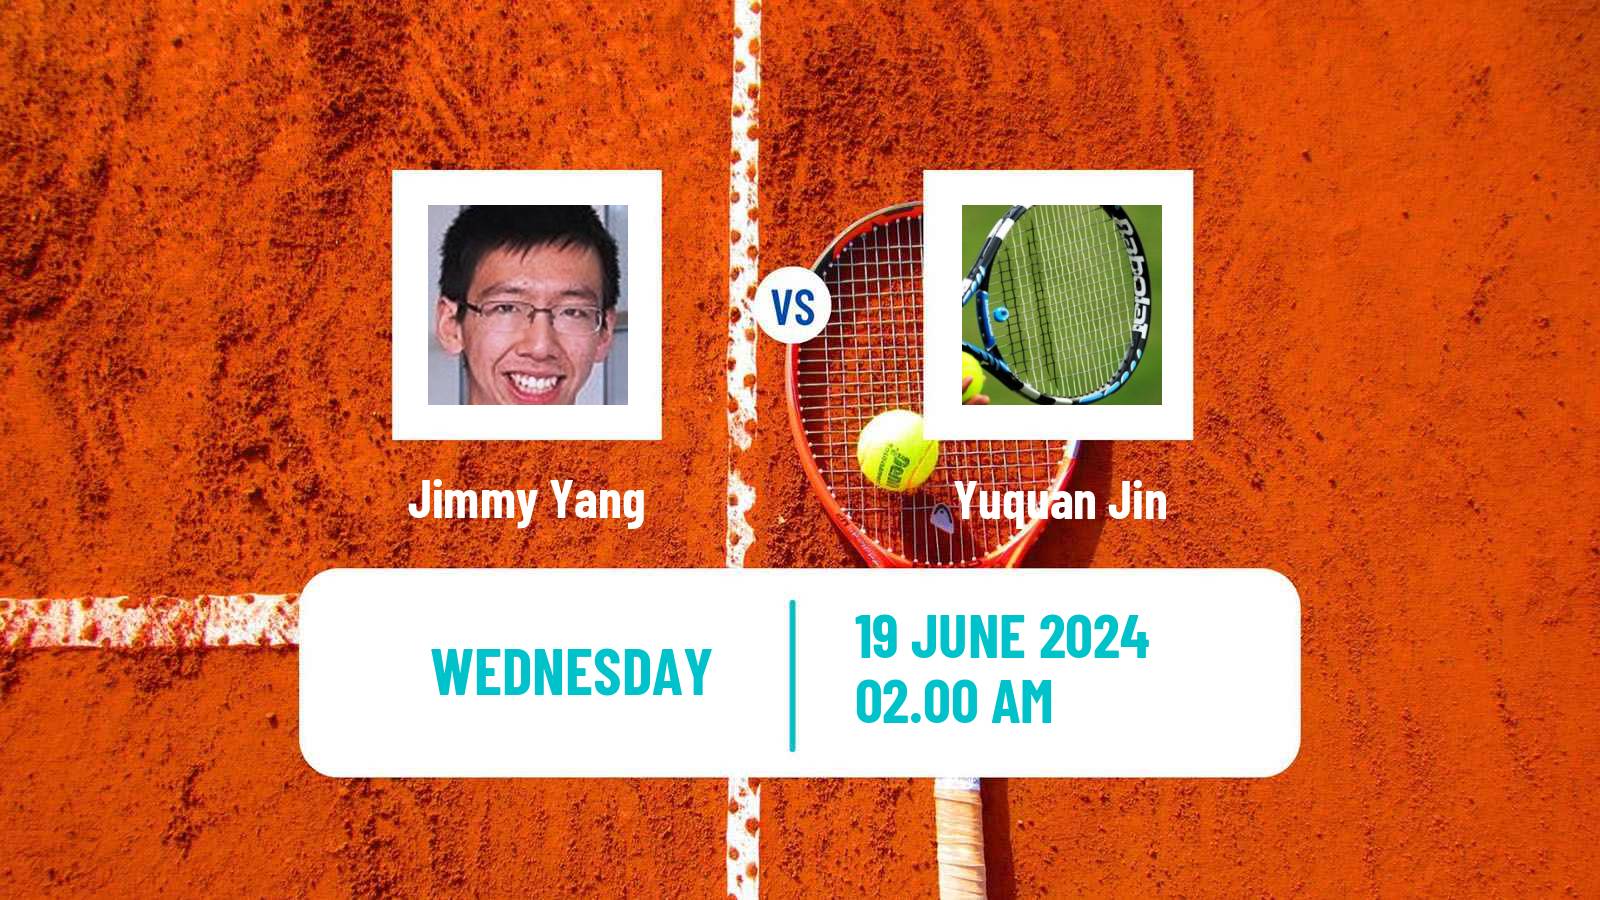 Tennis ITF M25 Luzhou Men Jimmy Yang - Yuquan Jin